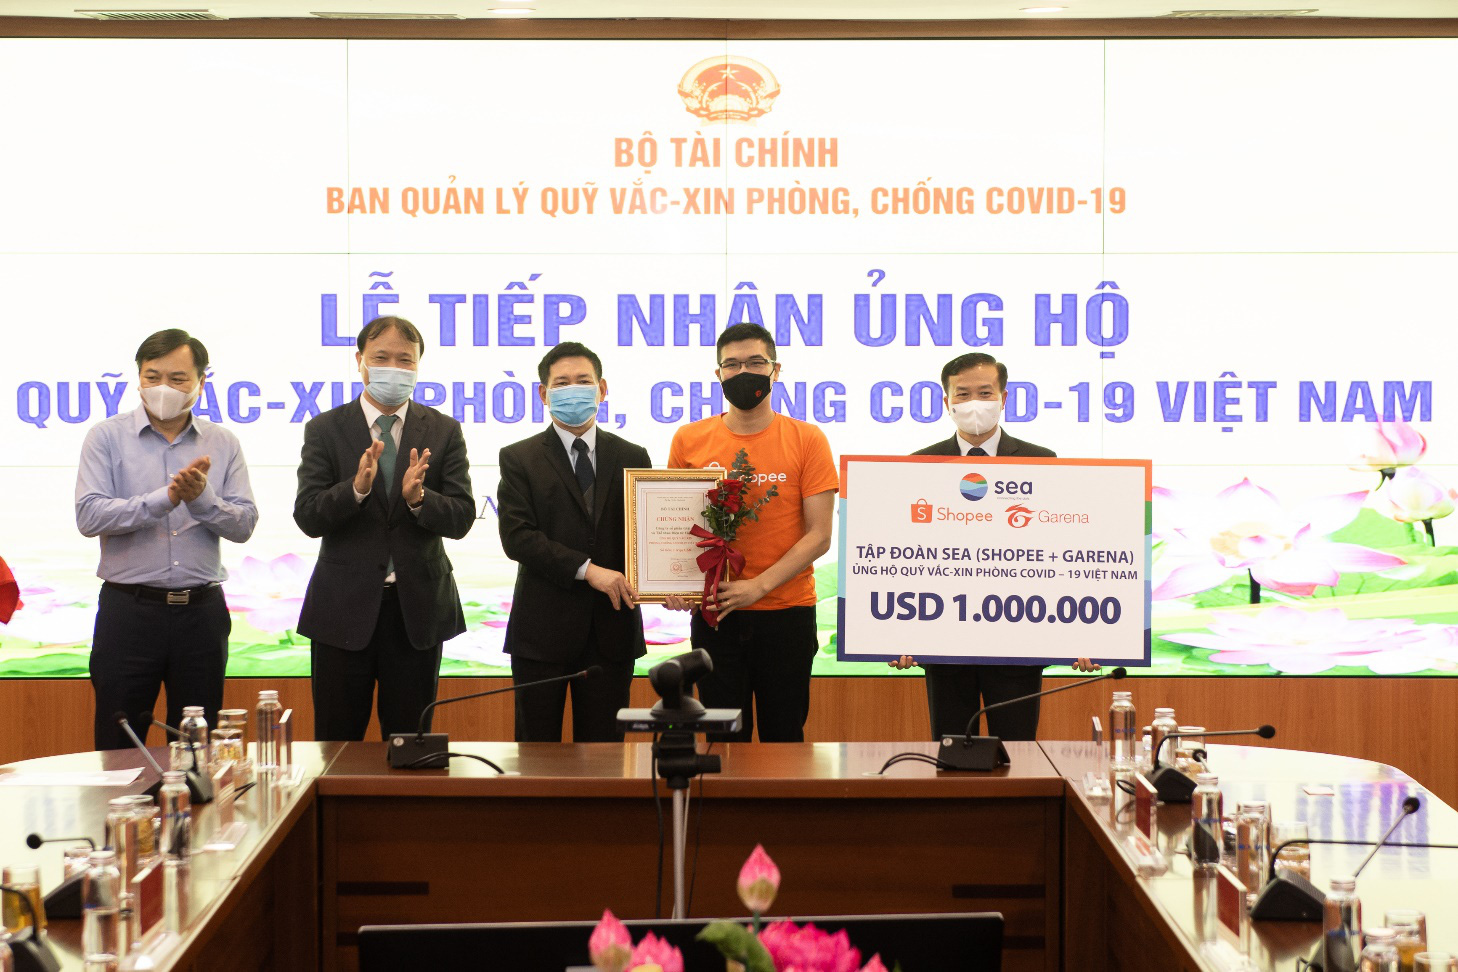 Shopee và Garena Việt Nam ủng hộ 1 triệu USD vào Quỹ vắc-xin phòng, chống Covid-19 - Ảnh 1.